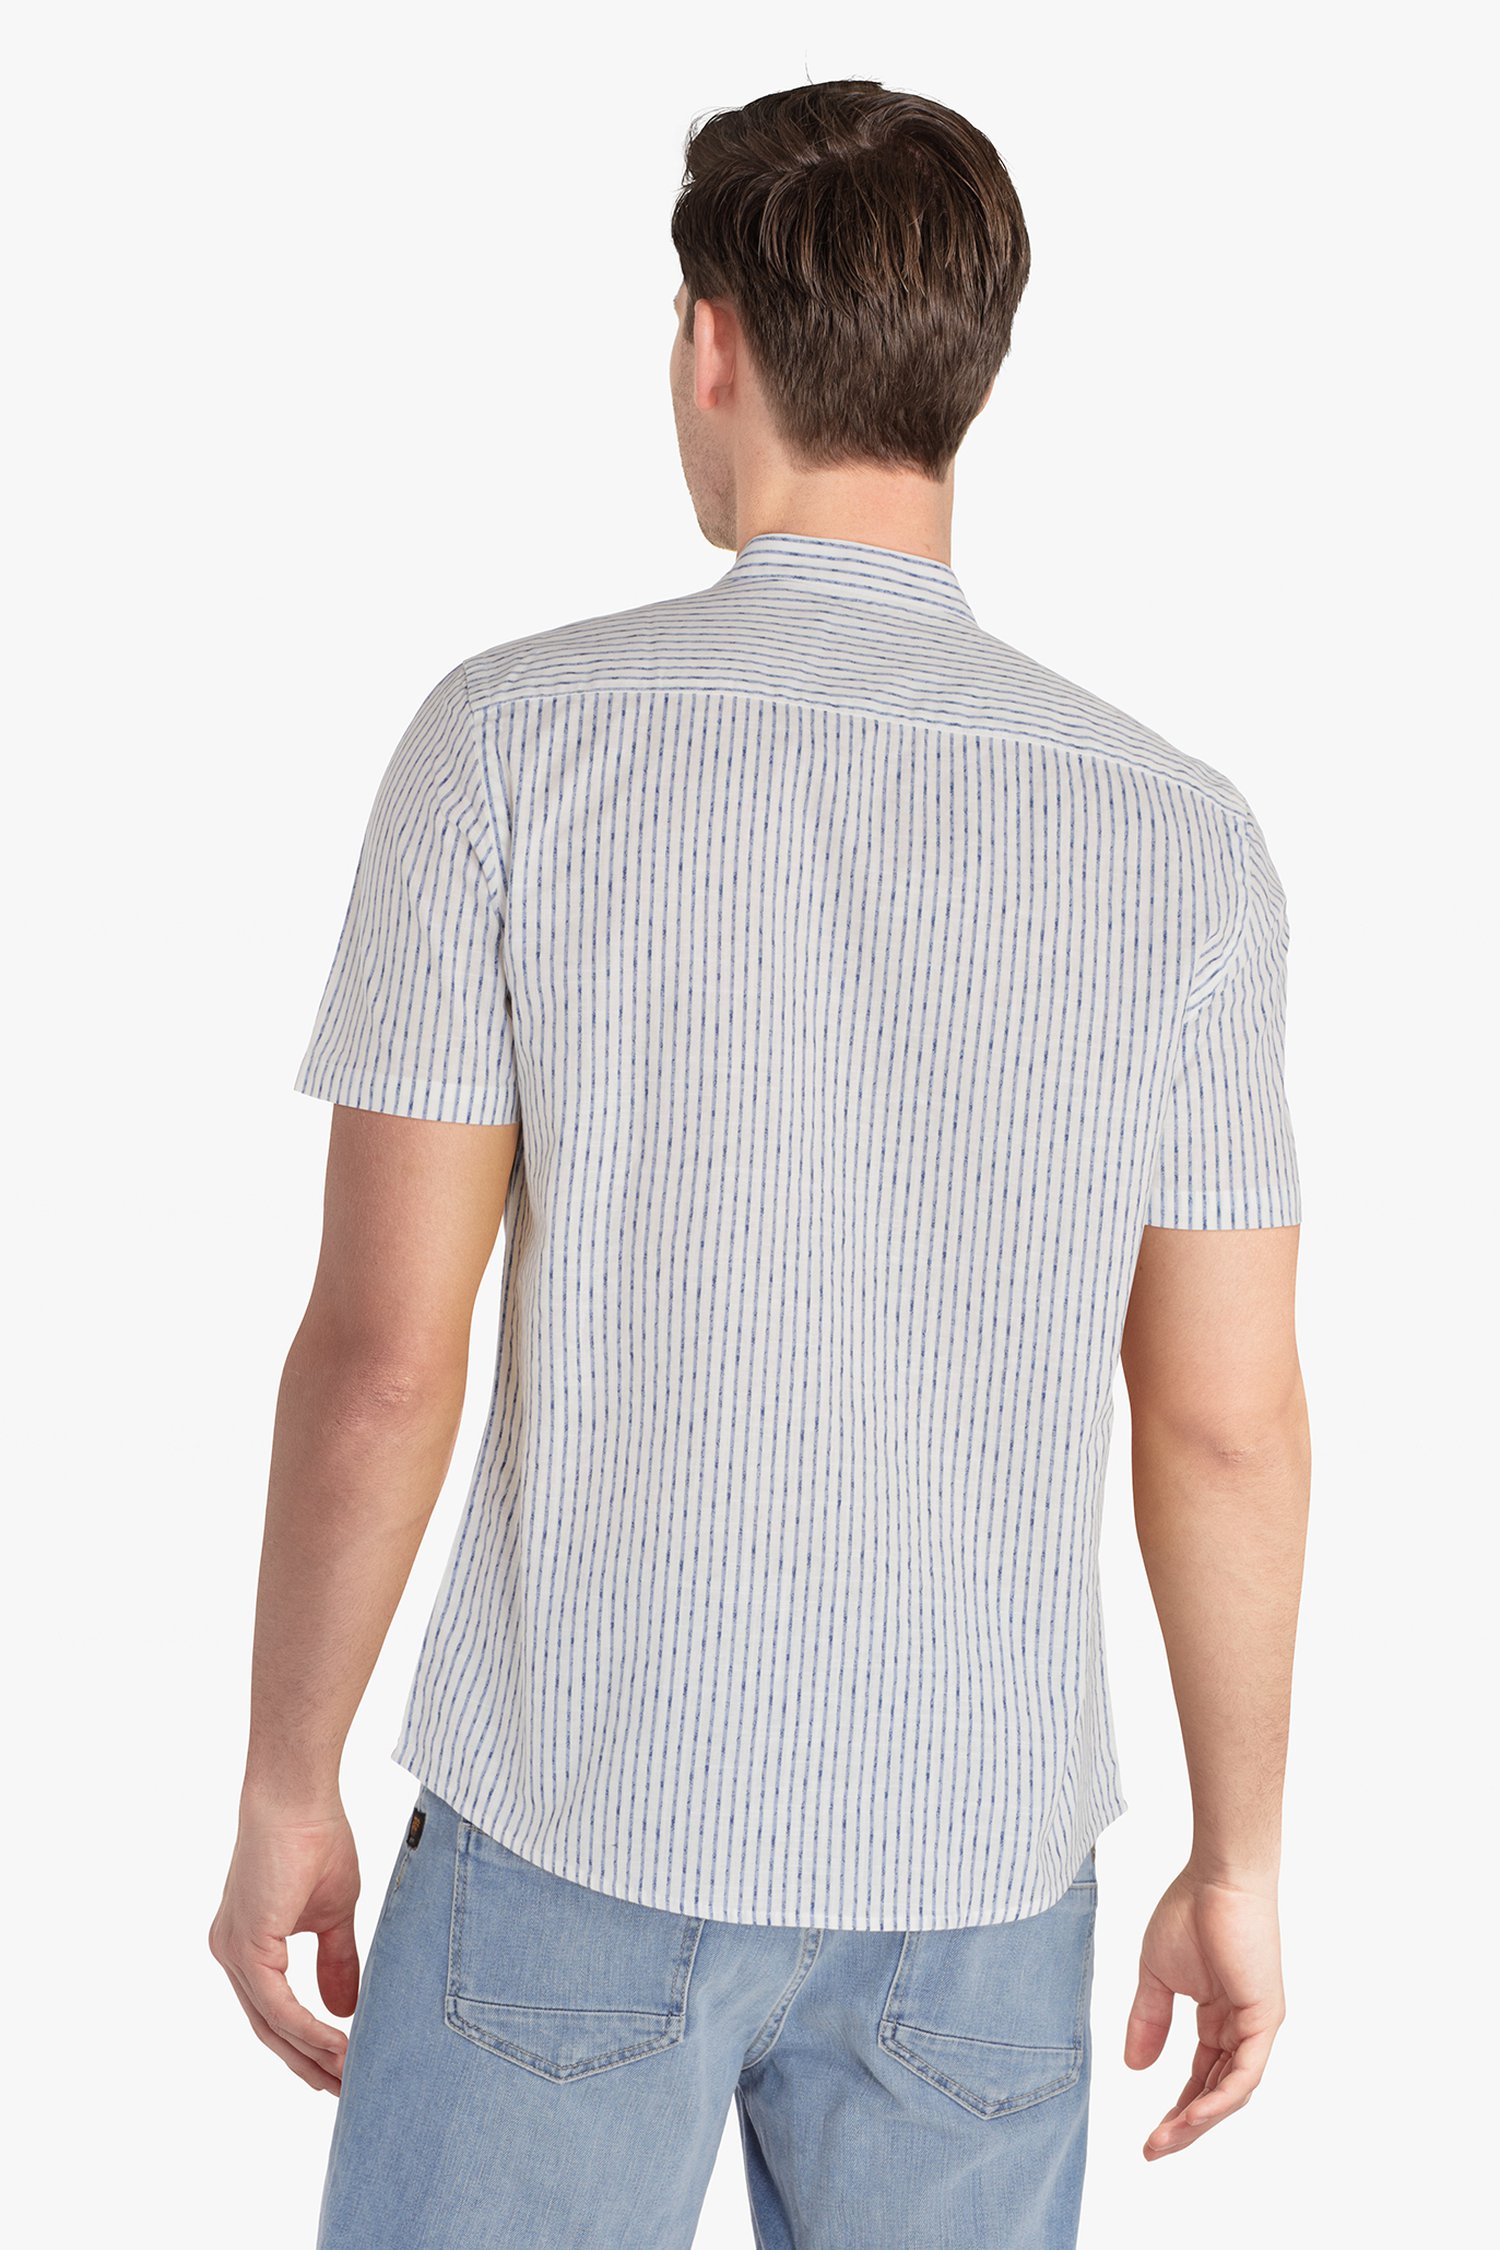 Wit gestreept hemd - regular fit van Casual Friday voor Heren